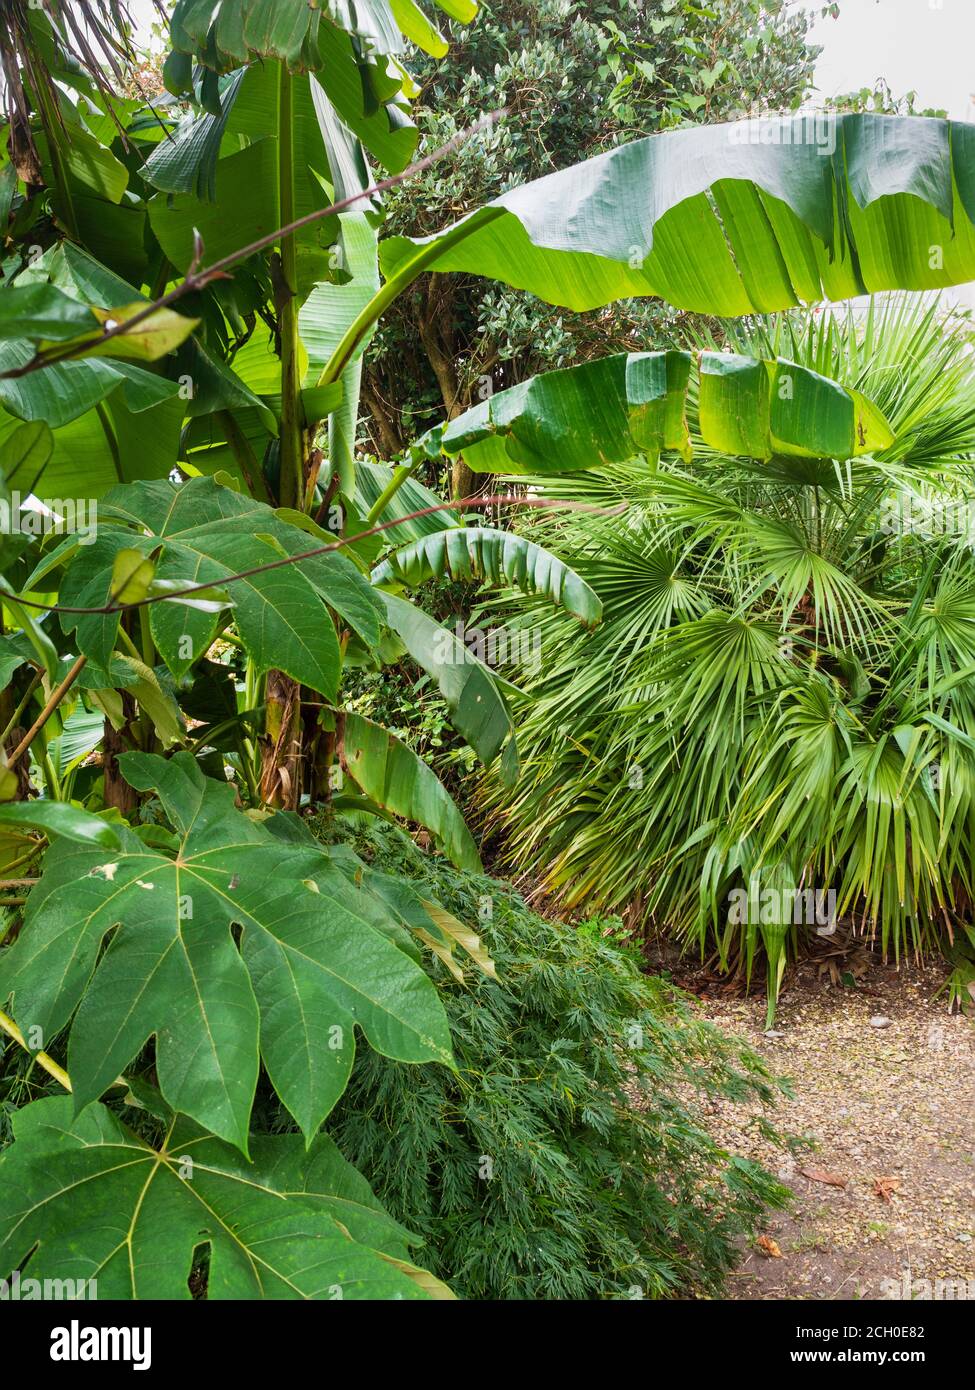 Tetrapanax papyrifer, Musa basjoo, Chamaerops humilis et Acer palmatum dissectum 'viridis' dans une combinaison de feuillage exotique dans un jardin de Devon, au Royaume-Uni Banque D'Images